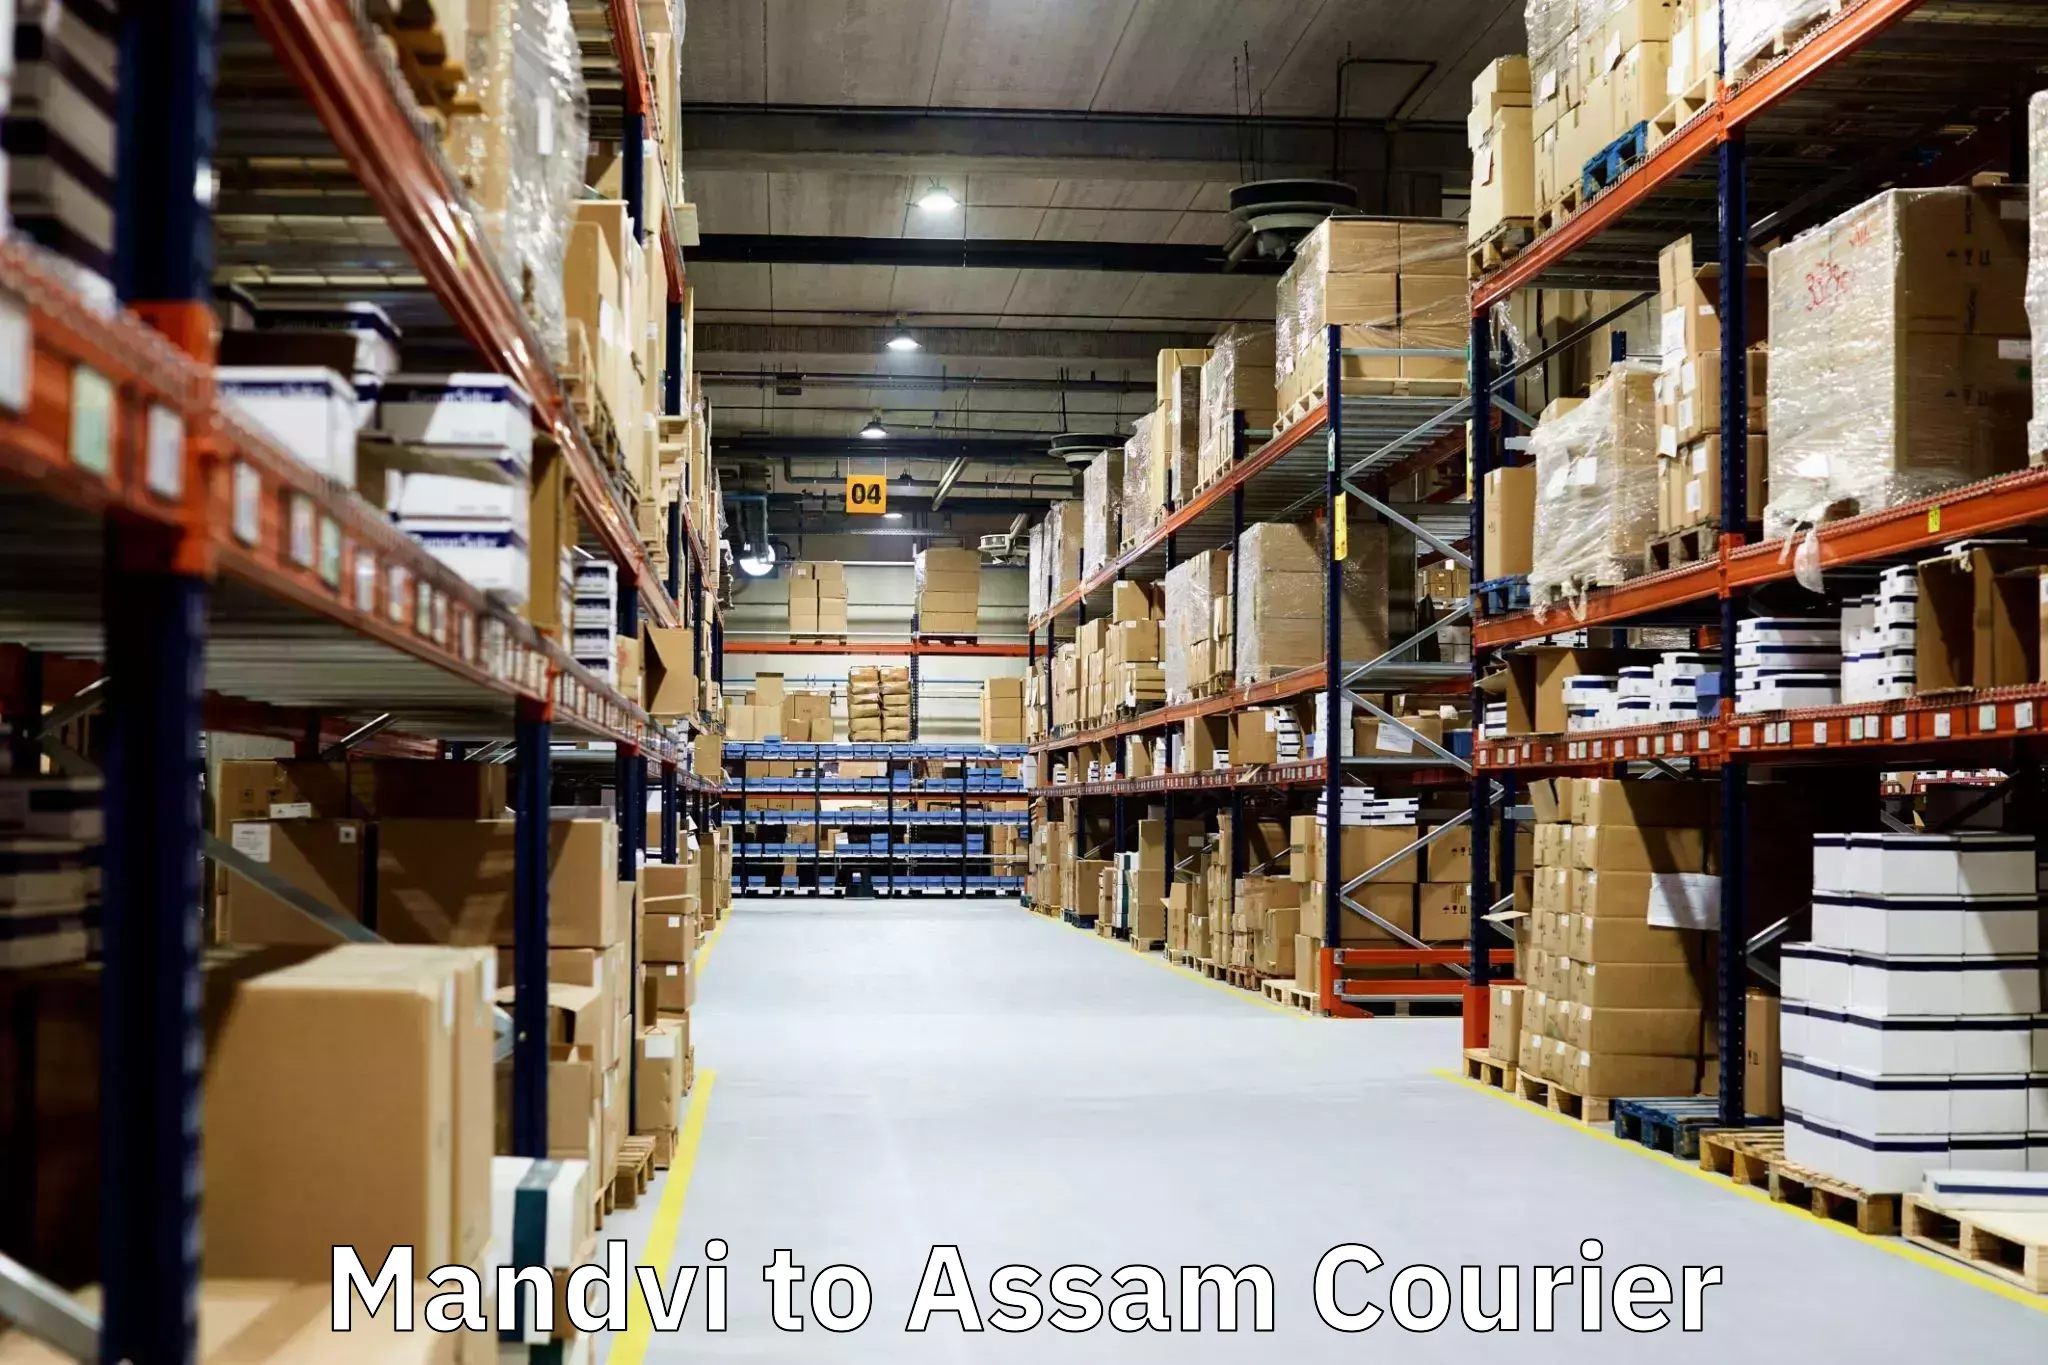 Quality moving company Mandvi to Assam